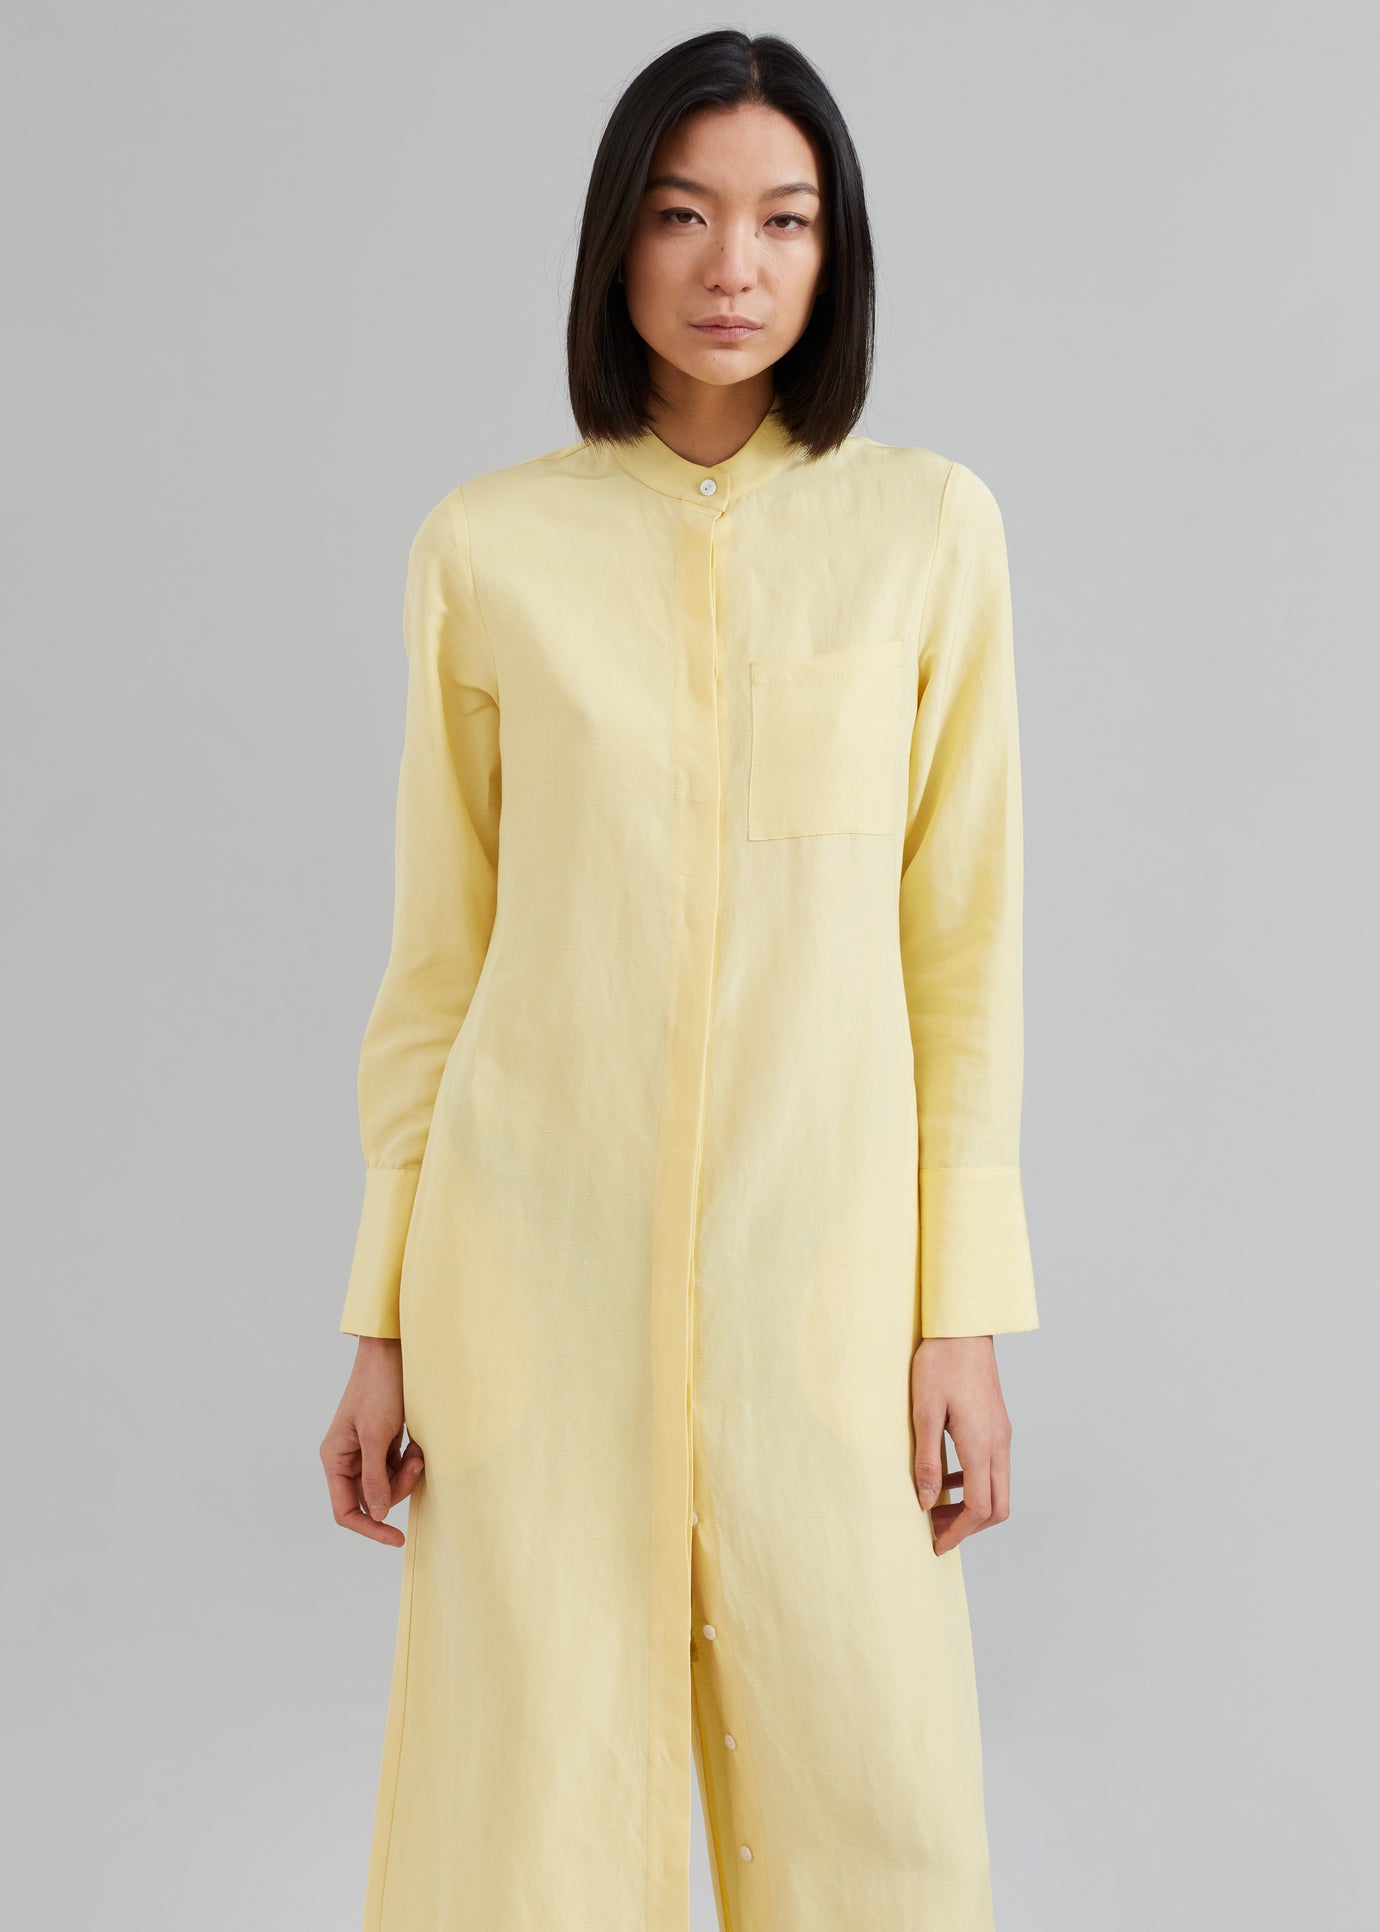 MATIN Collarless Shirt Dress - Butter - 1